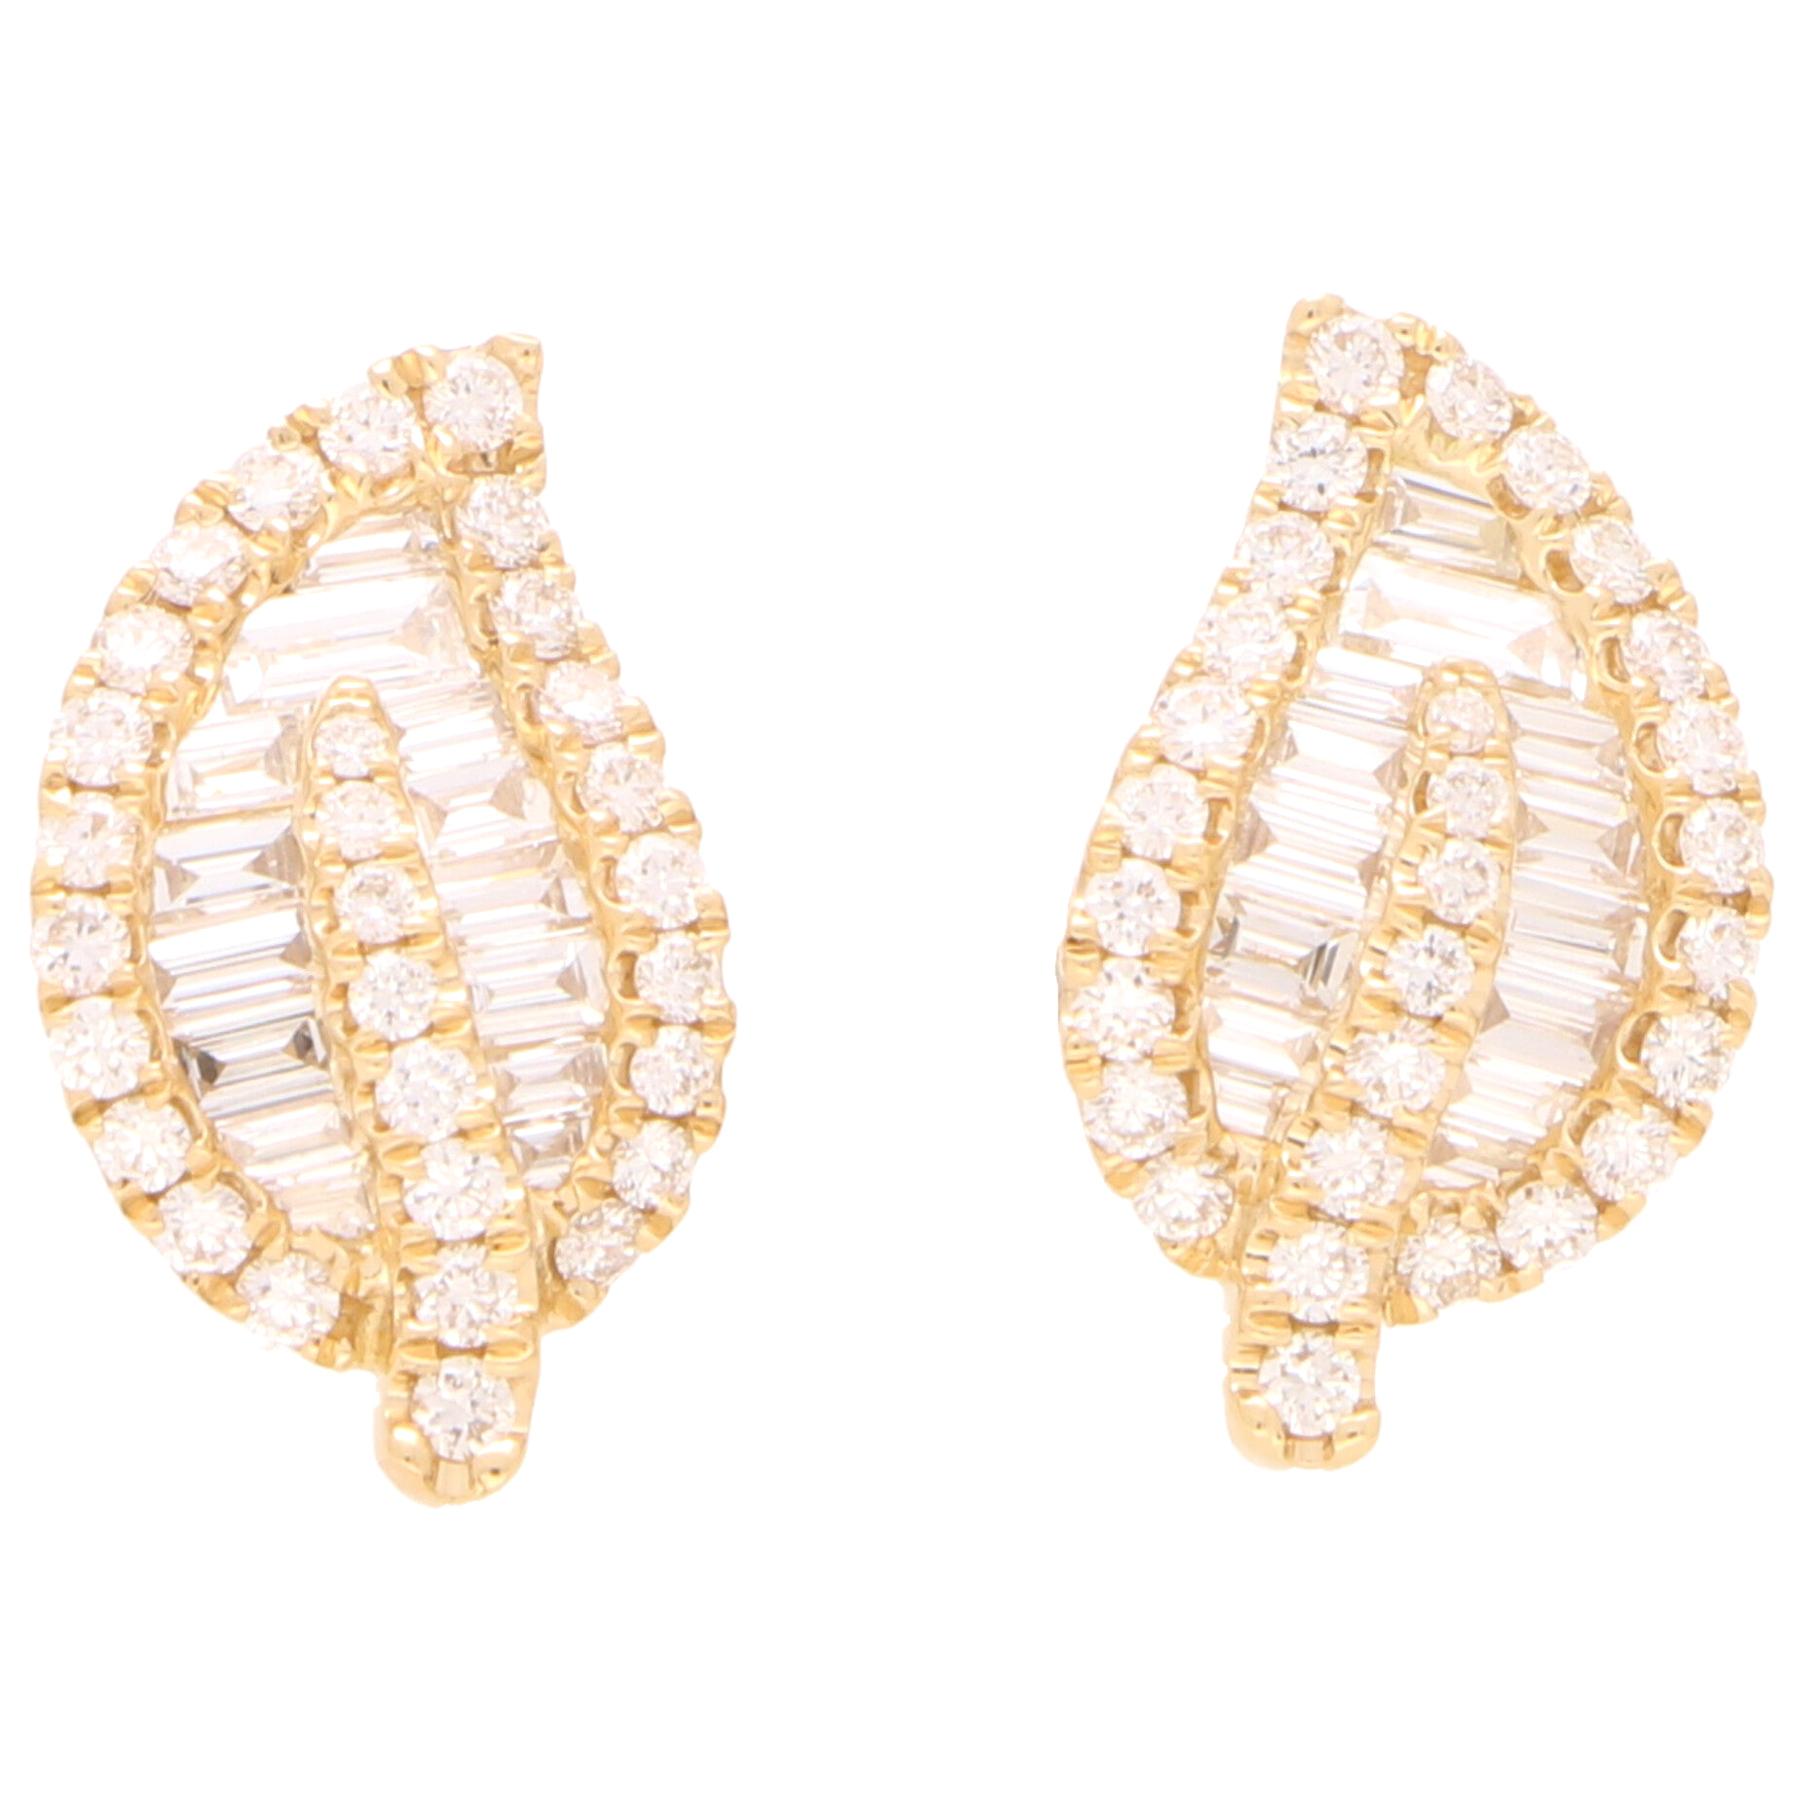 Diamond Leaf Stud Earrings Set in 18 Karat Yellow Gold